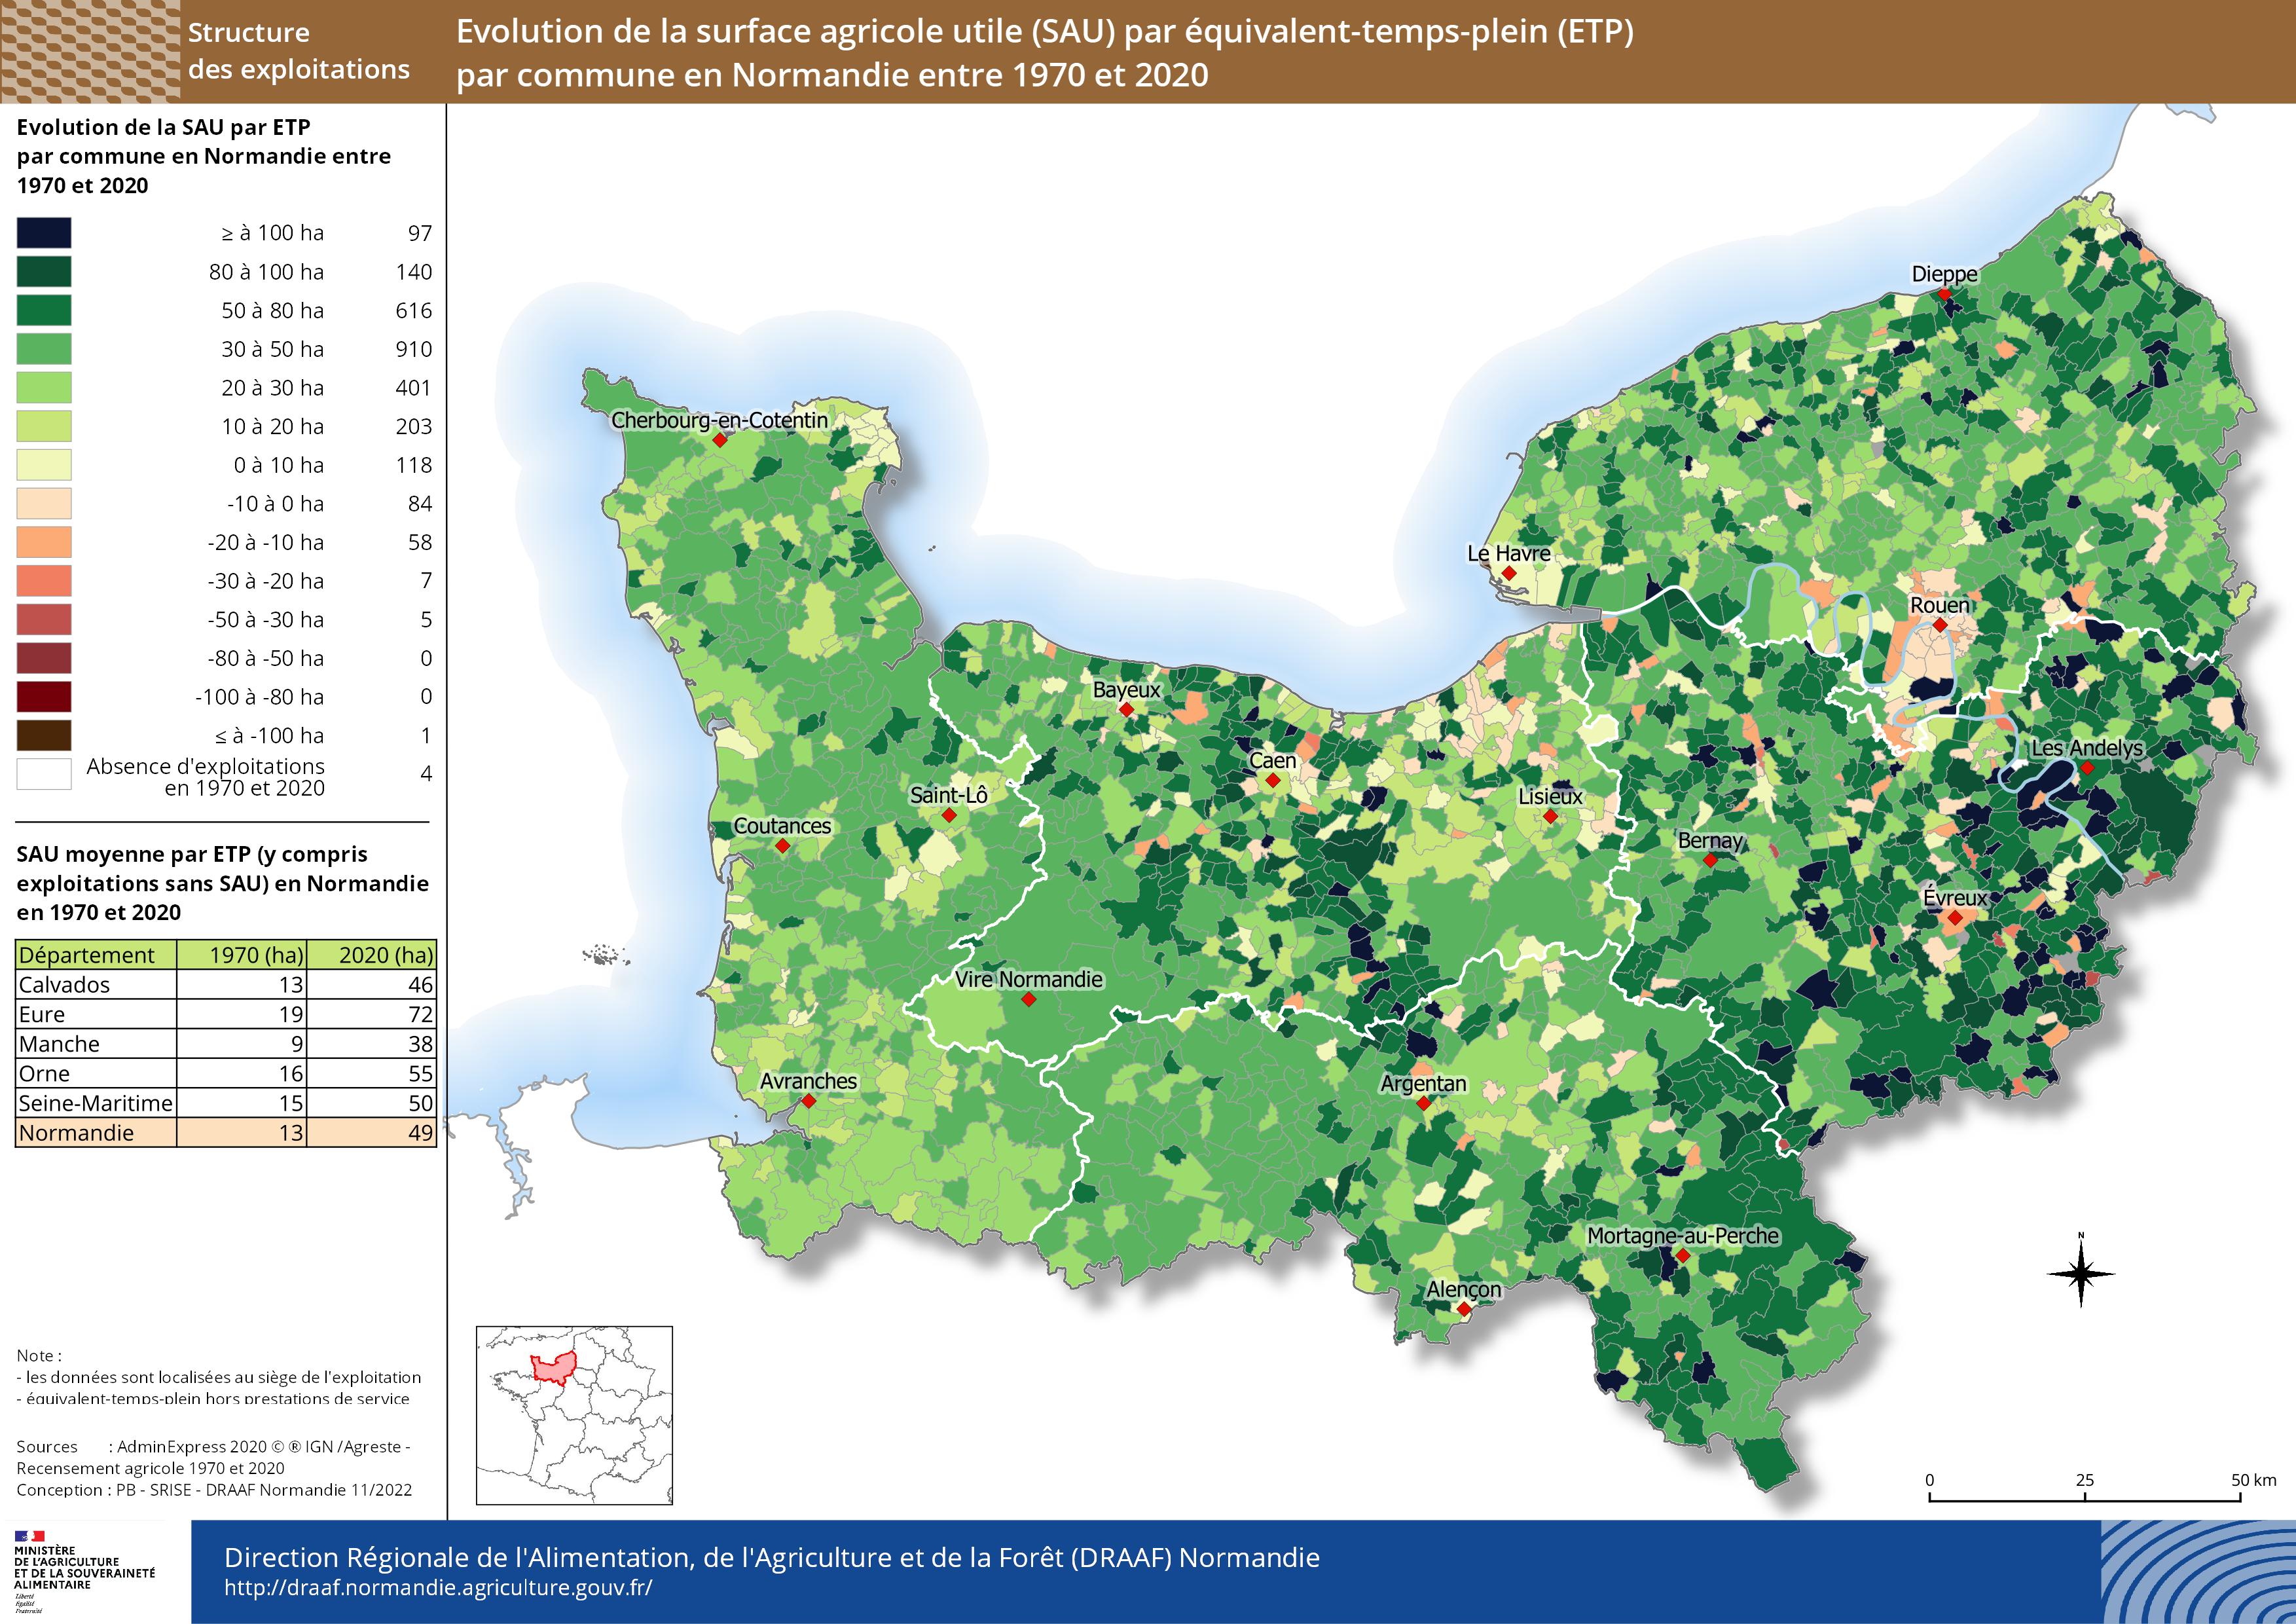 carte représentant l'évolution de la surface agricole (SAU) par équivalent-temps-plein par commune en Normandie entre 1970 et 2020